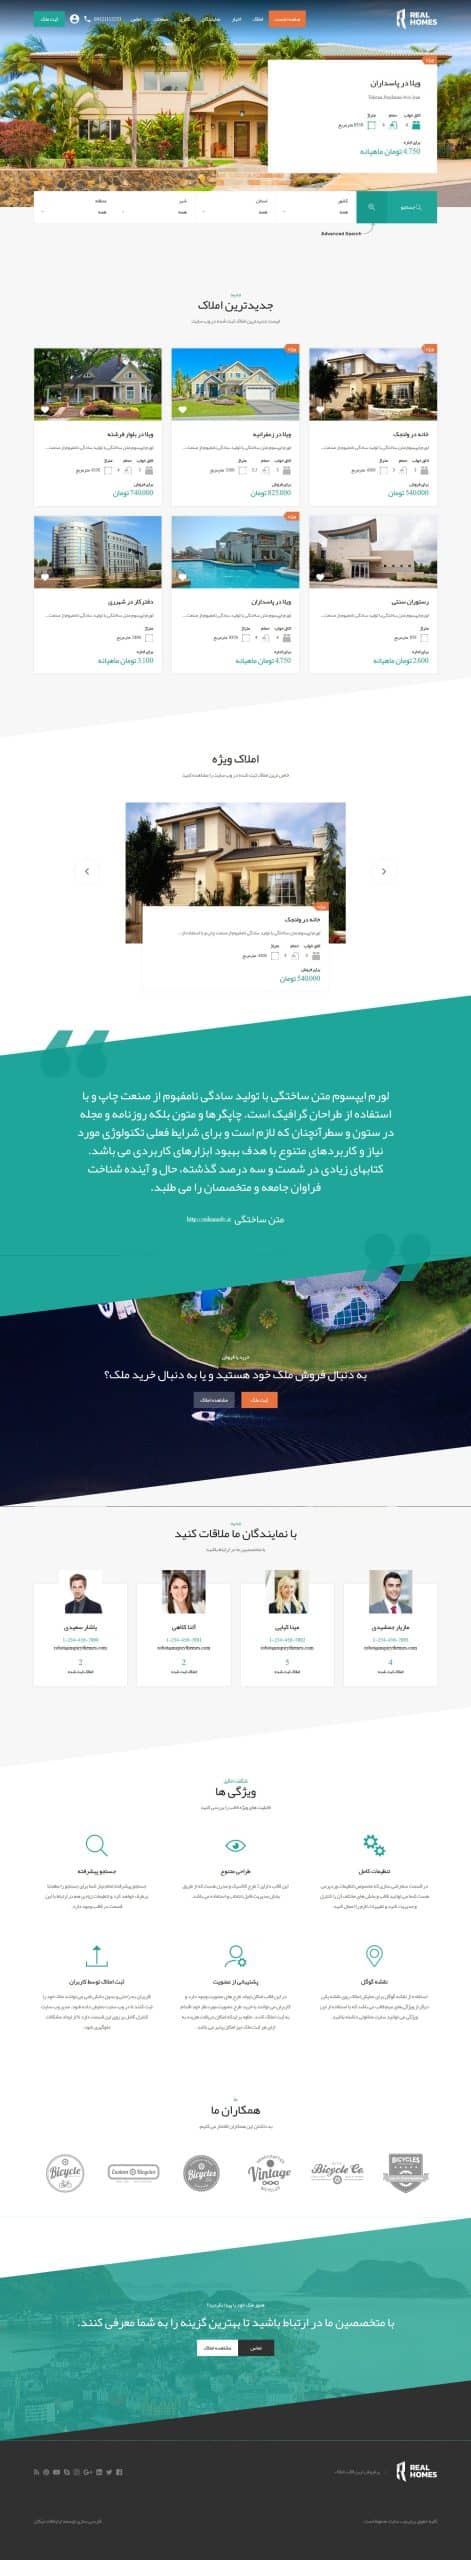 دانلود قالب فارسی ثبت املاک ریل هوم Real Homes